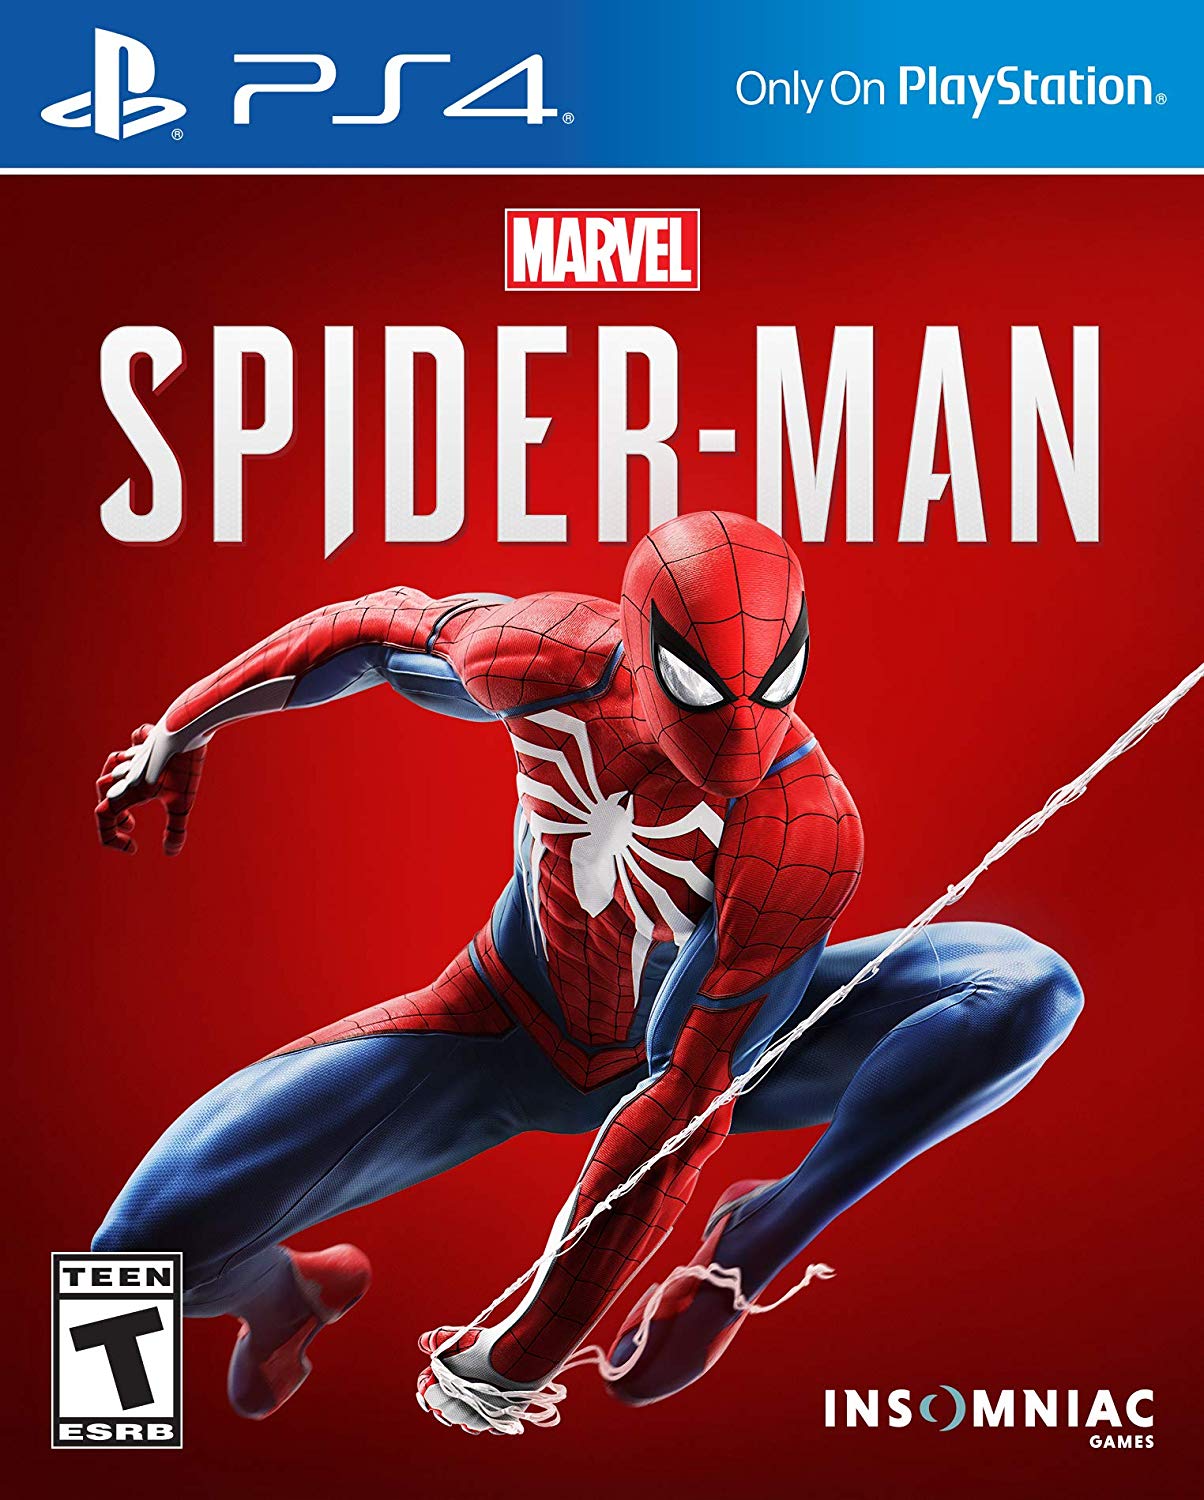 Marvel Spider-Man gamebox render